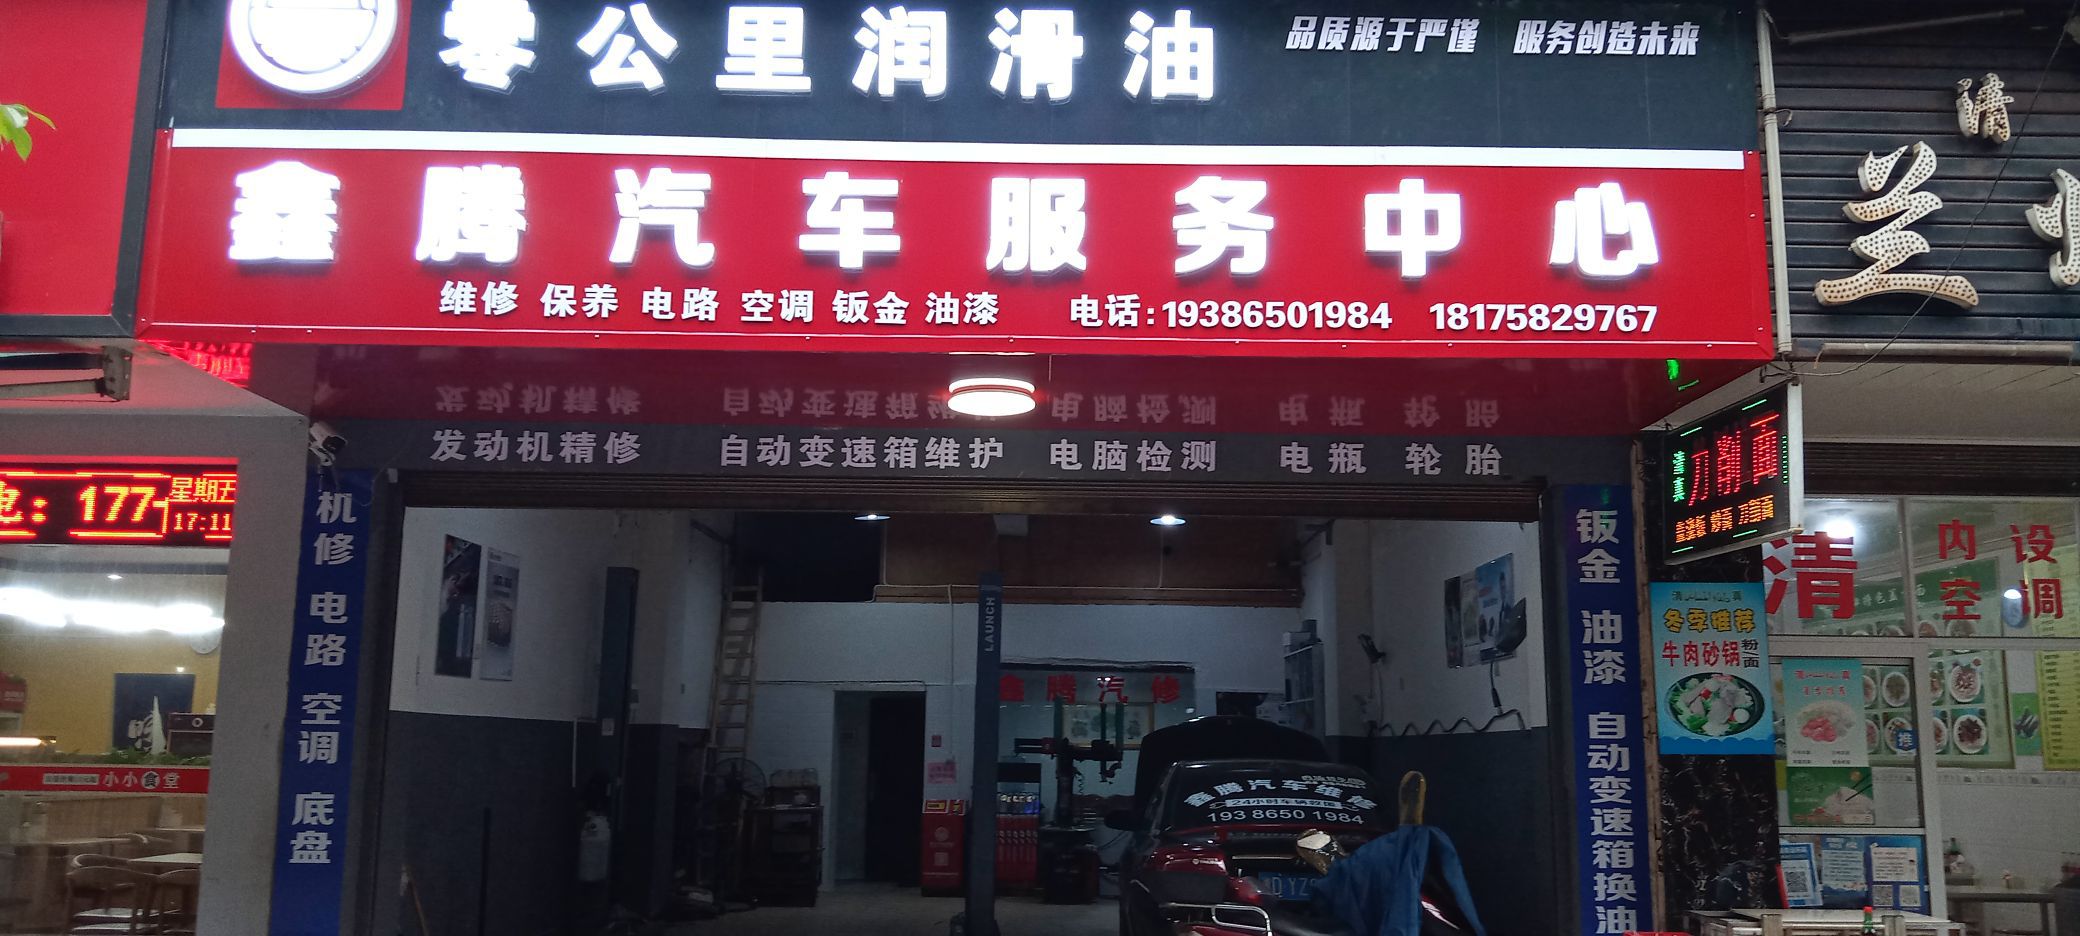 鑫隆汽车服务中心